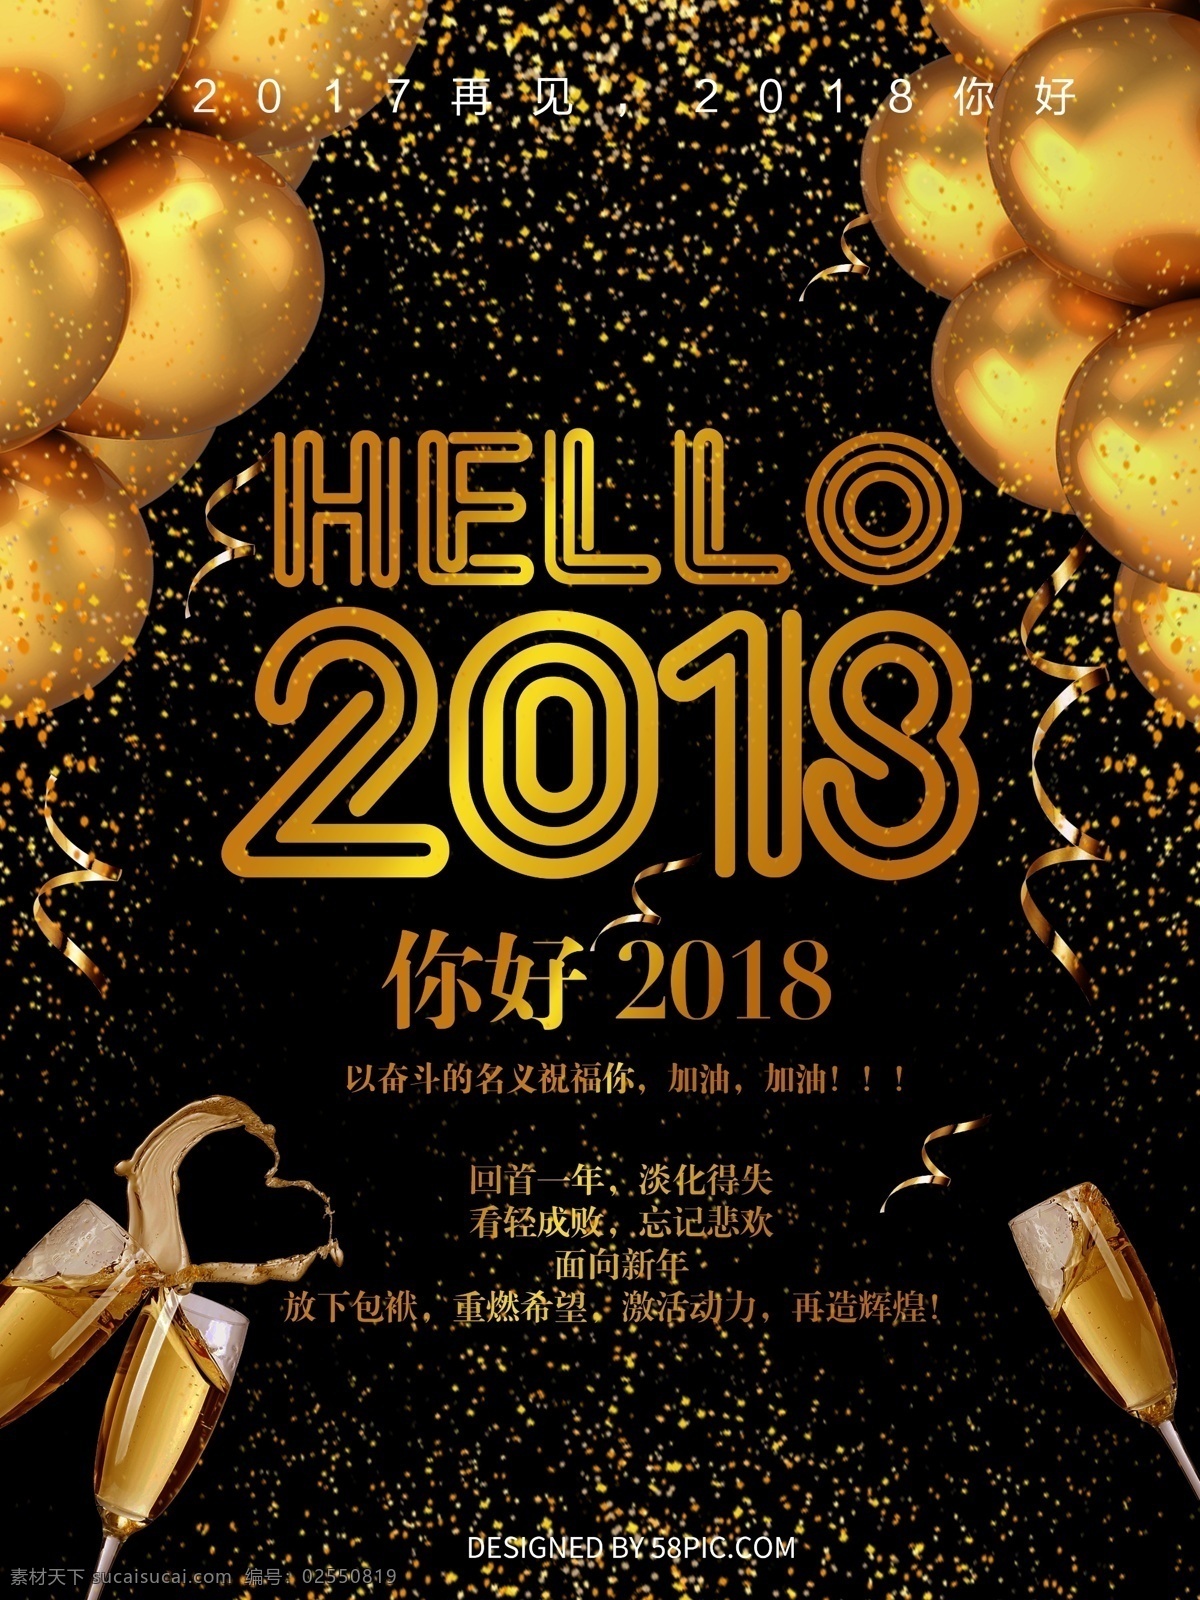 高端 黑 金色 你好 2018 海报 hello2018 氛围海报 黑金色 黑色海报 金色海报 你好2018 气球